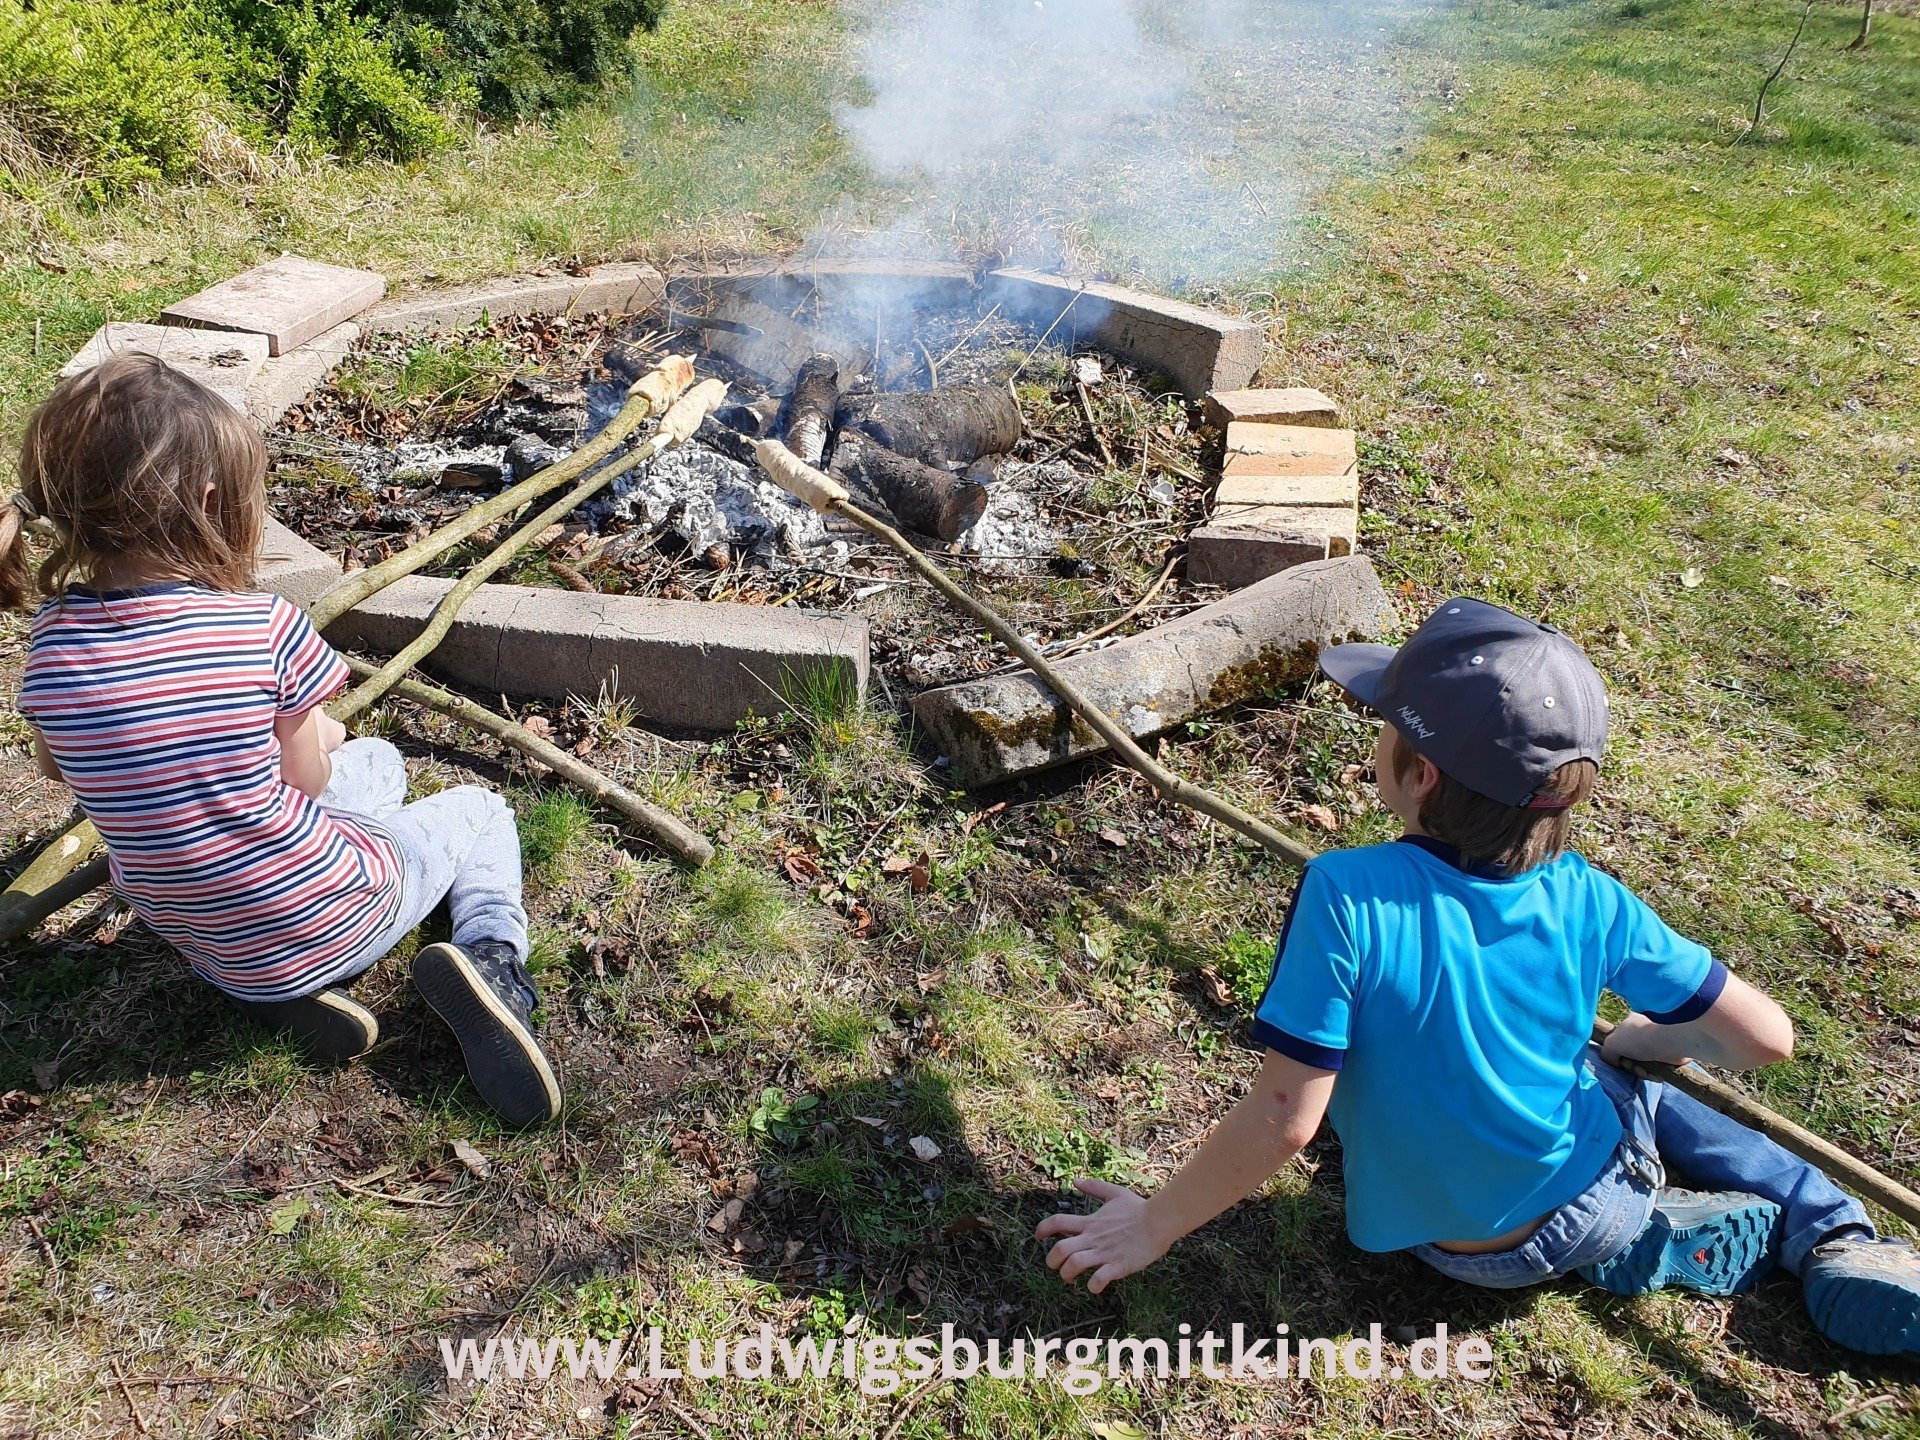 Zwei Kinder grillen Stockbrot über einem Lagerfeuer.